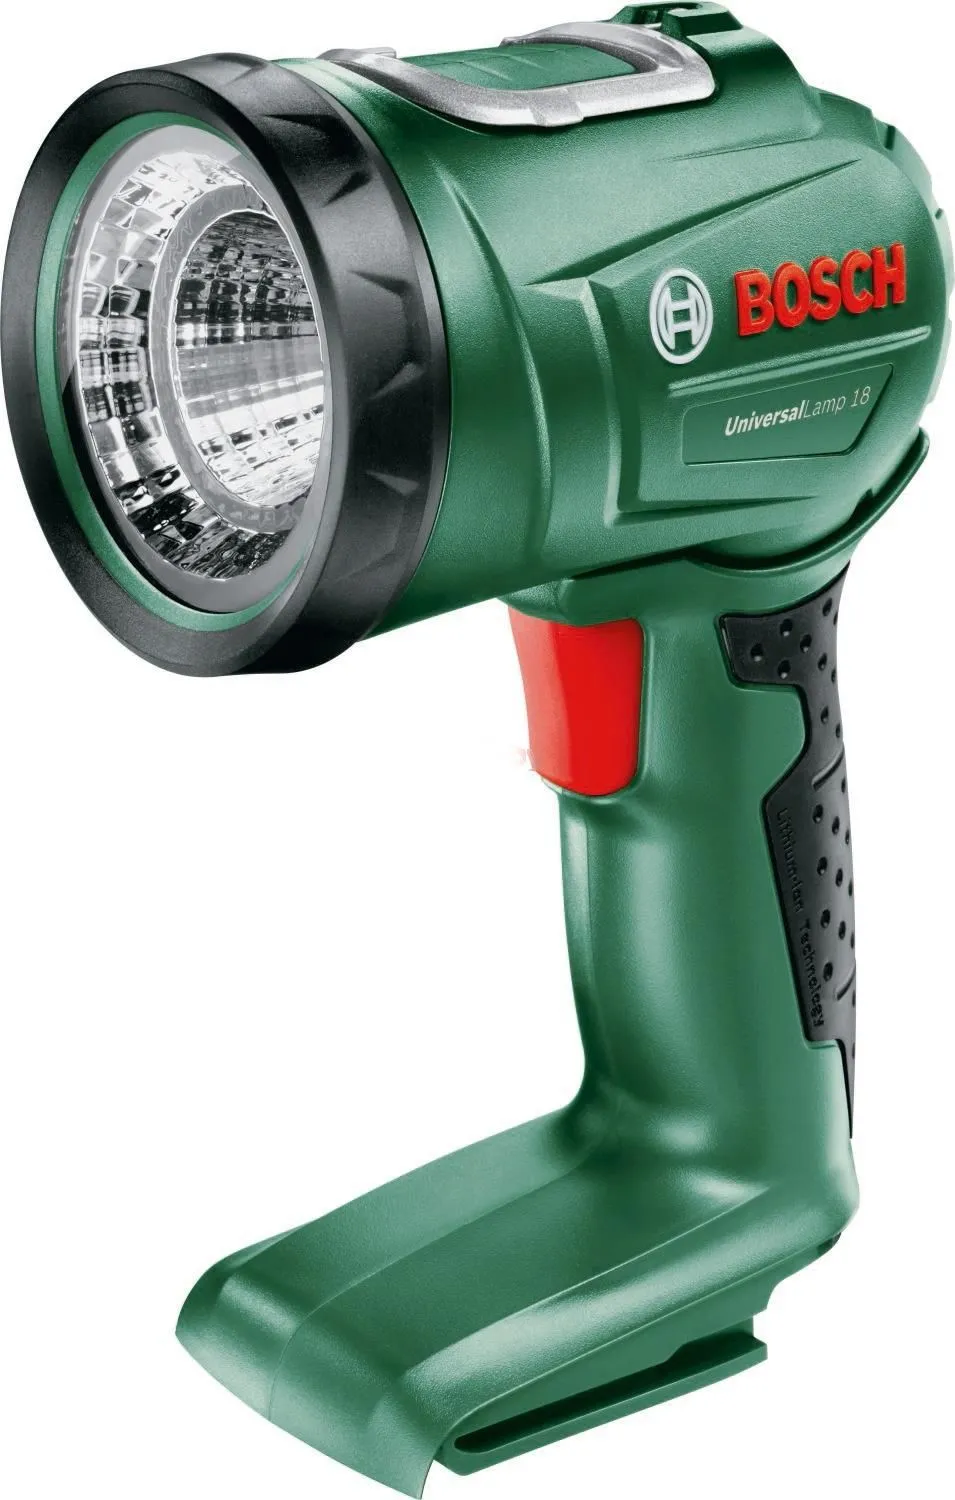 Bosch UniversalLamp 18 (06039A1100)